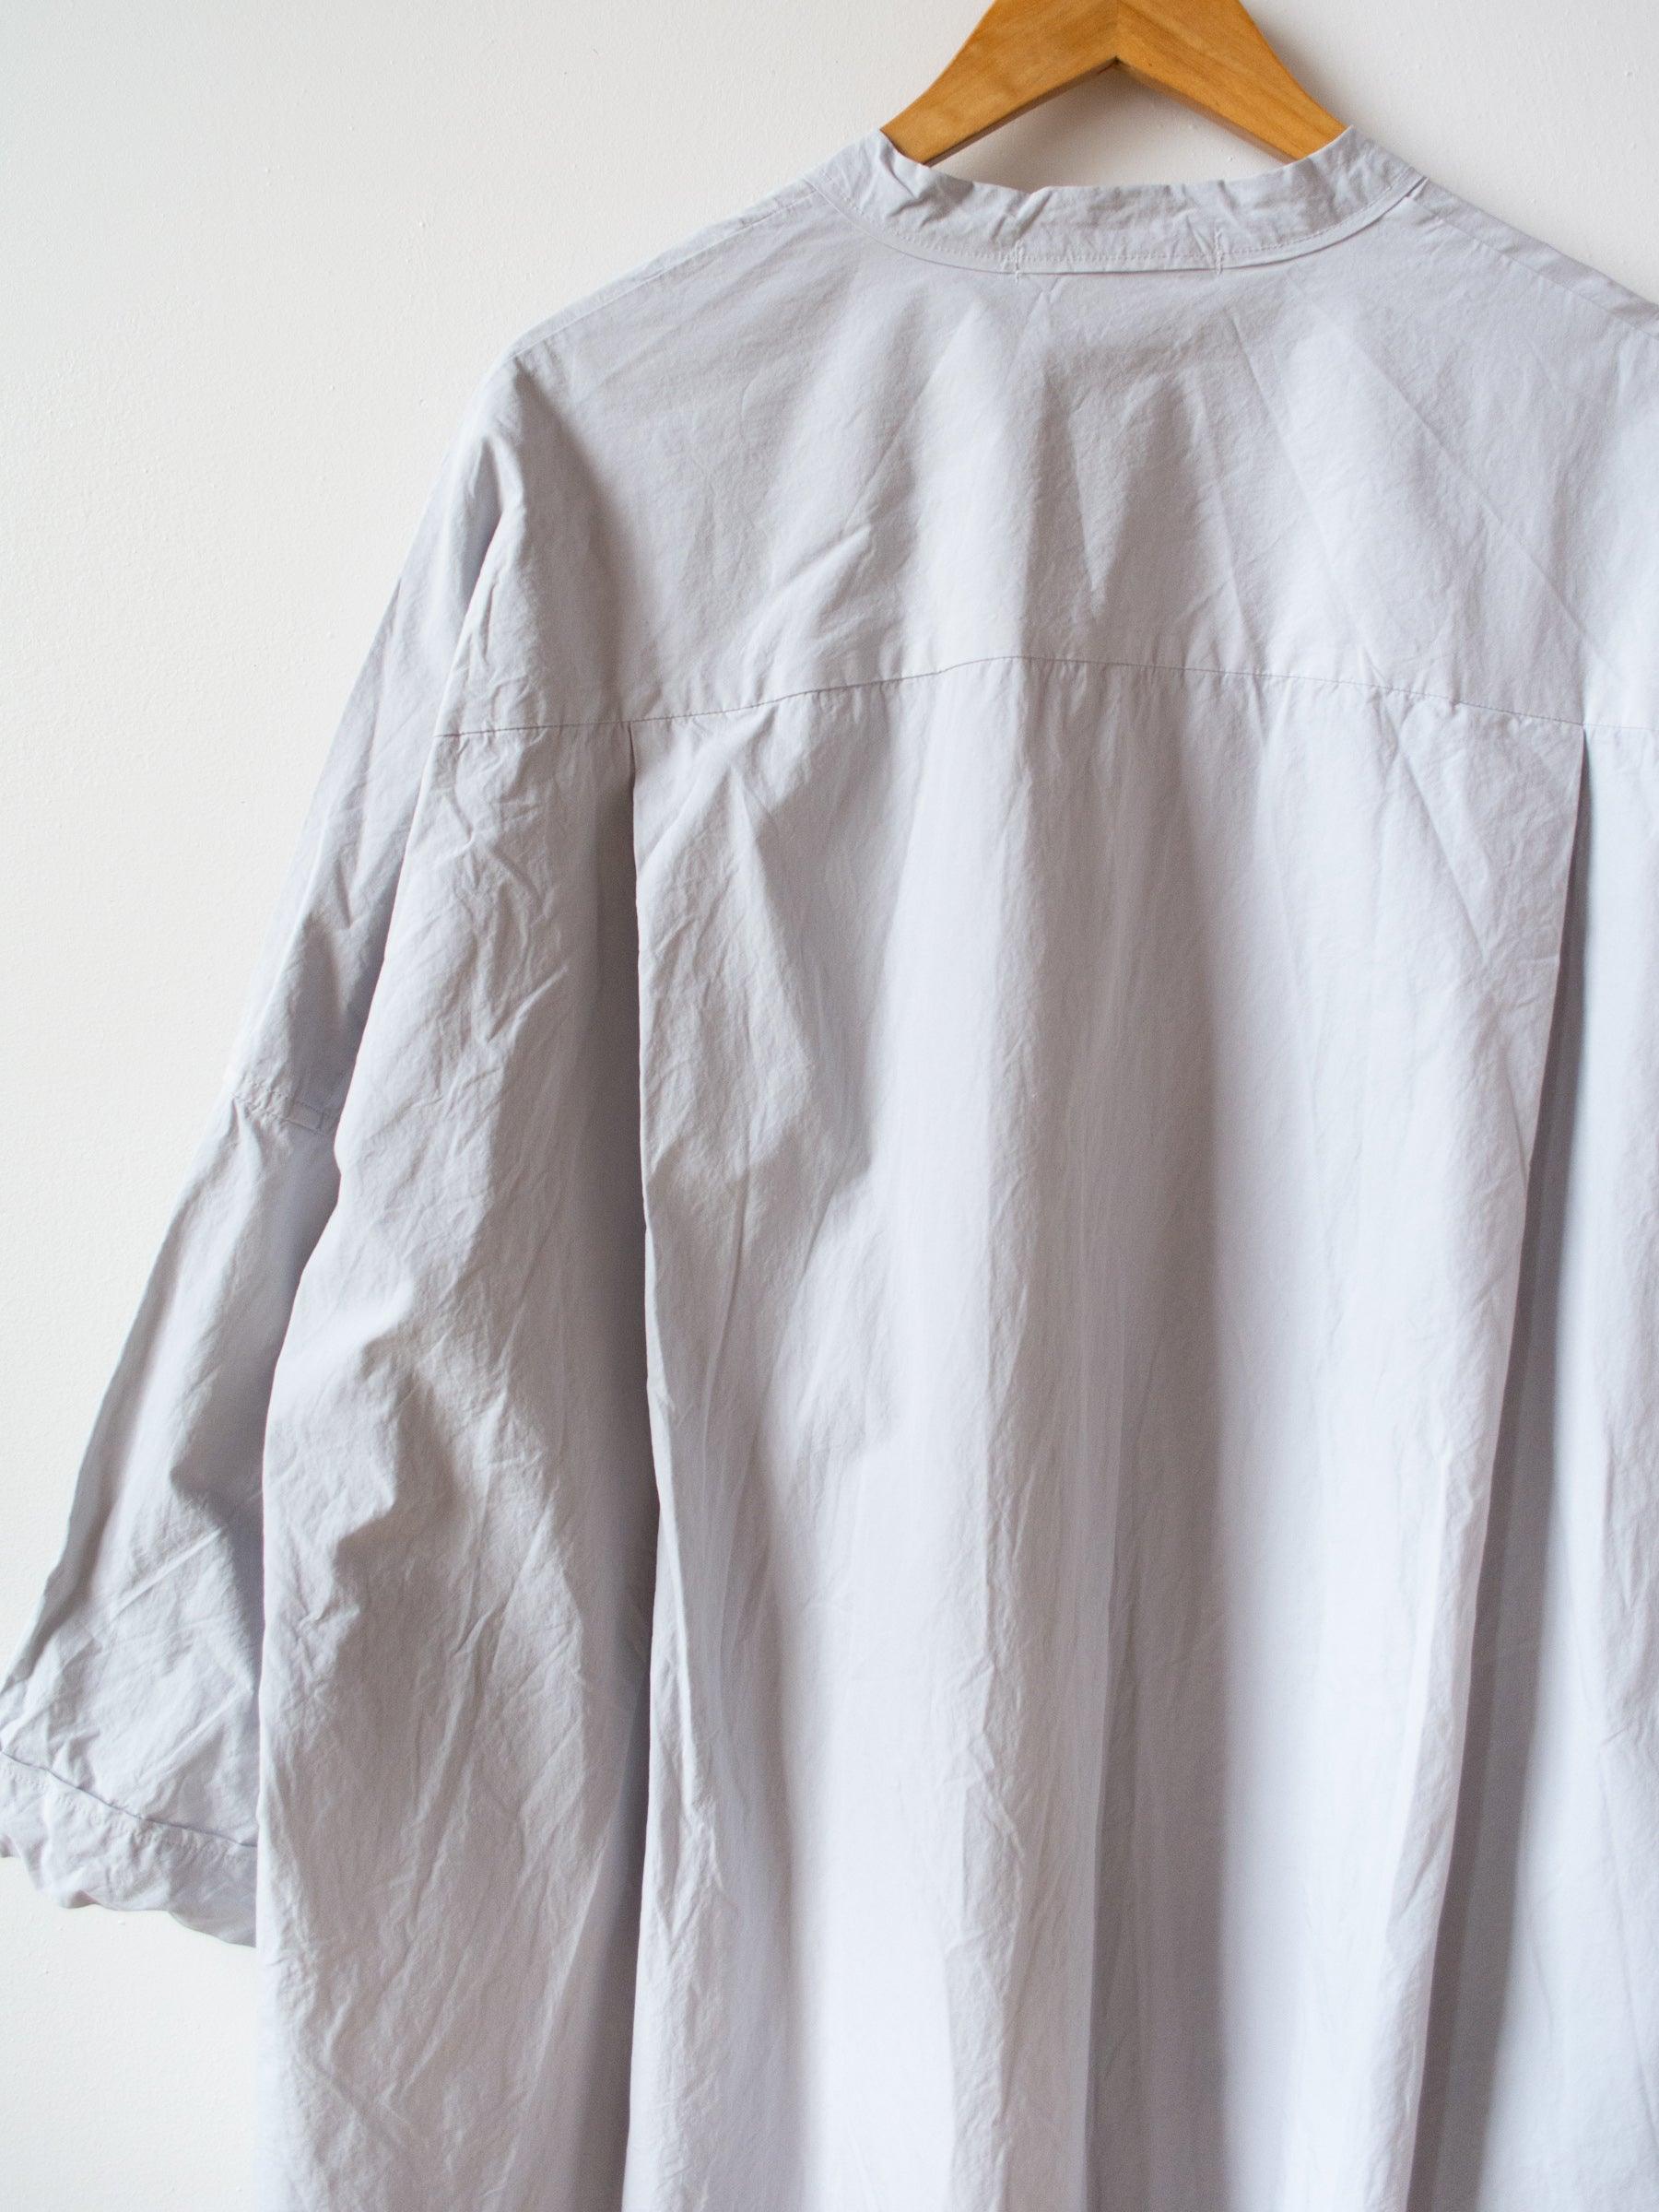 Namu Shop - Veritecoeur Typewriter Cotton Shirt Dress - Ash